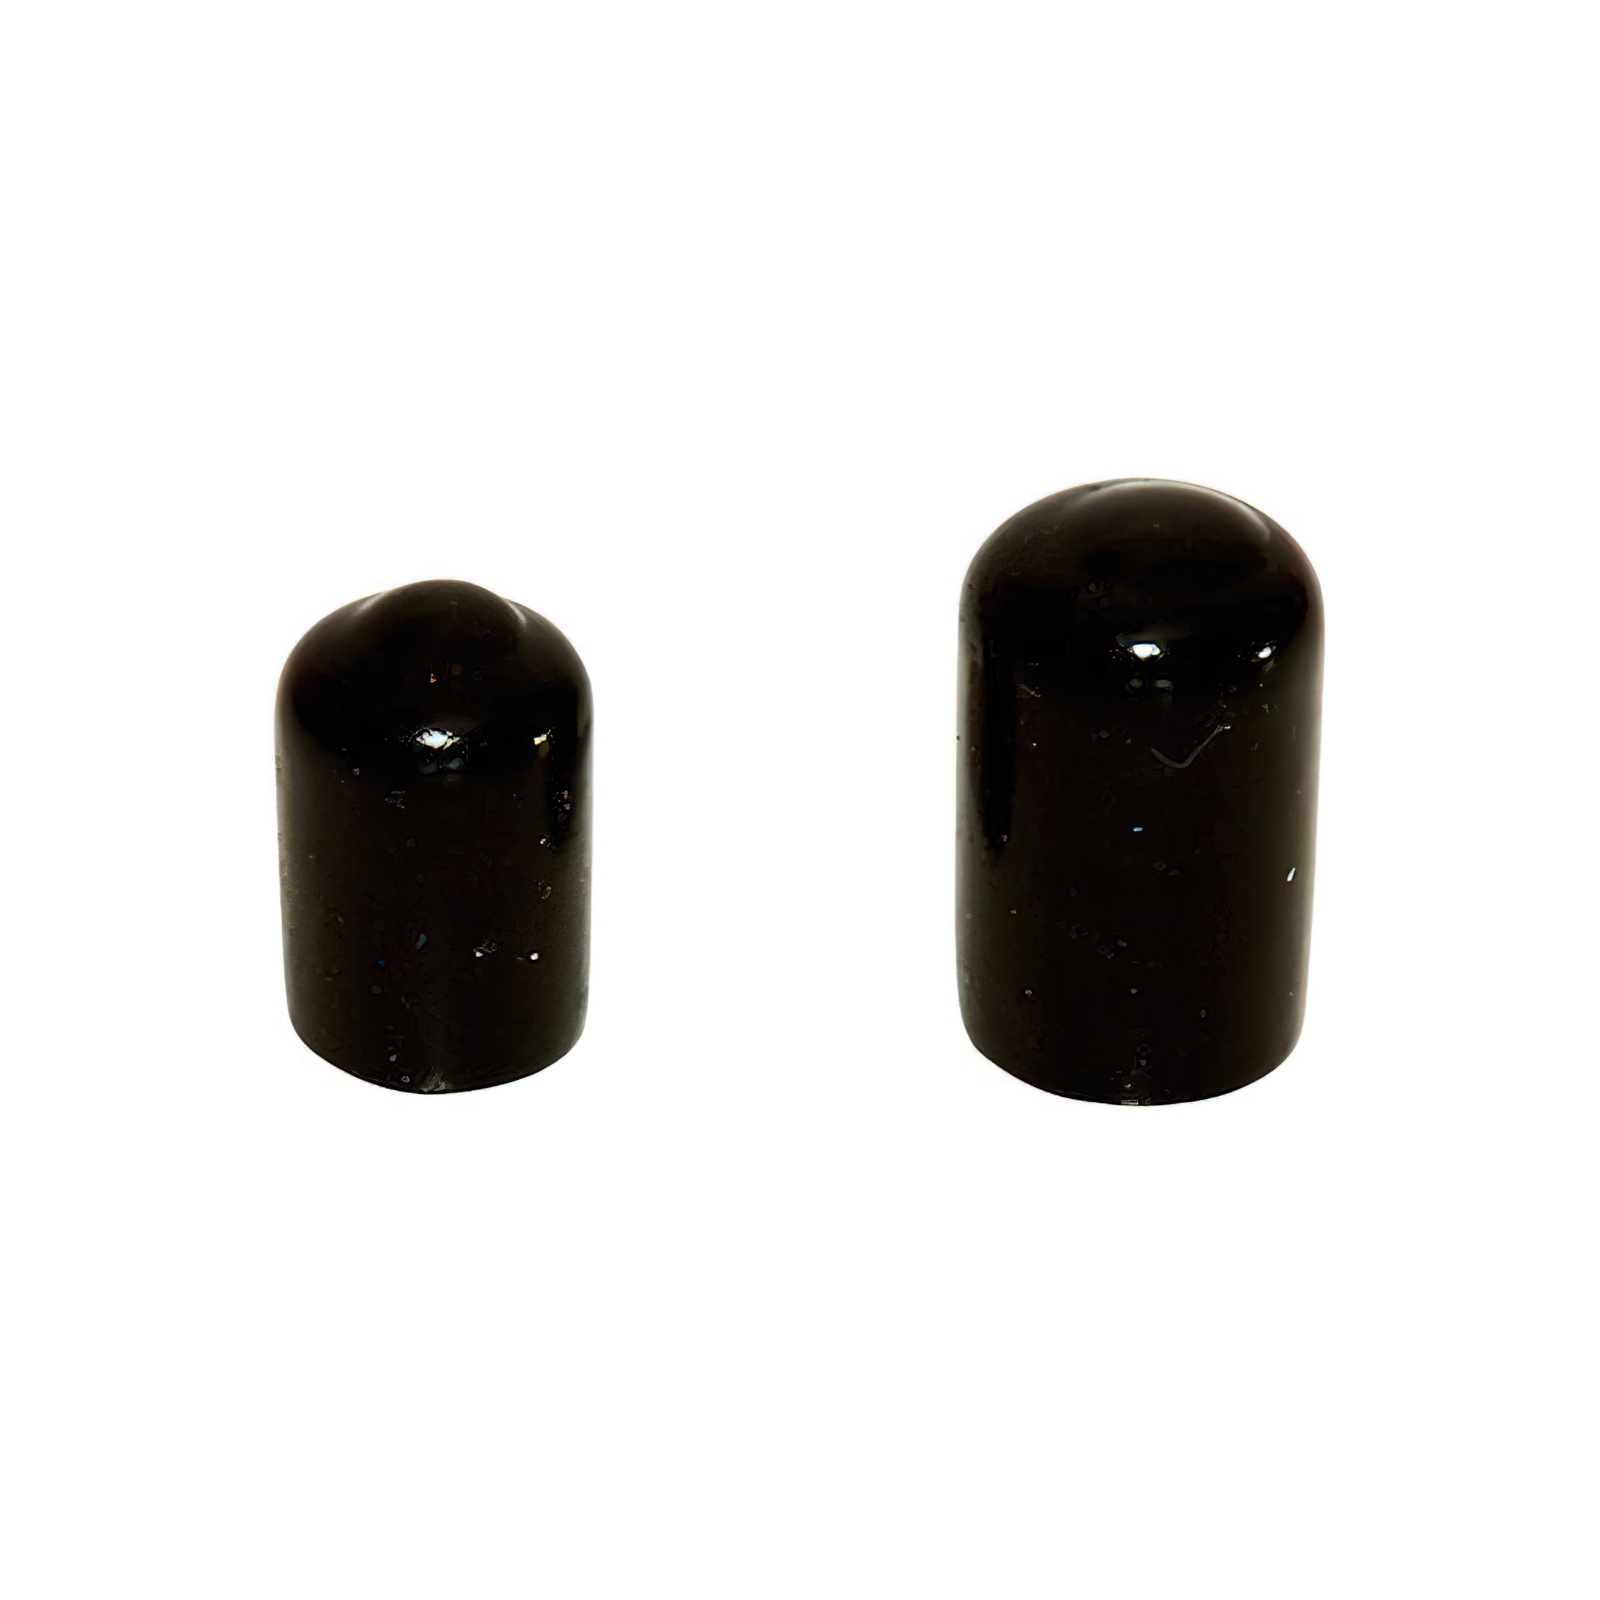 Endkappe weich (PVC) 2 mm (Innendurchmesser) - 10 Stück schwarz für Drachen- und Modellbau Basteln Montagen Messebau Industrie